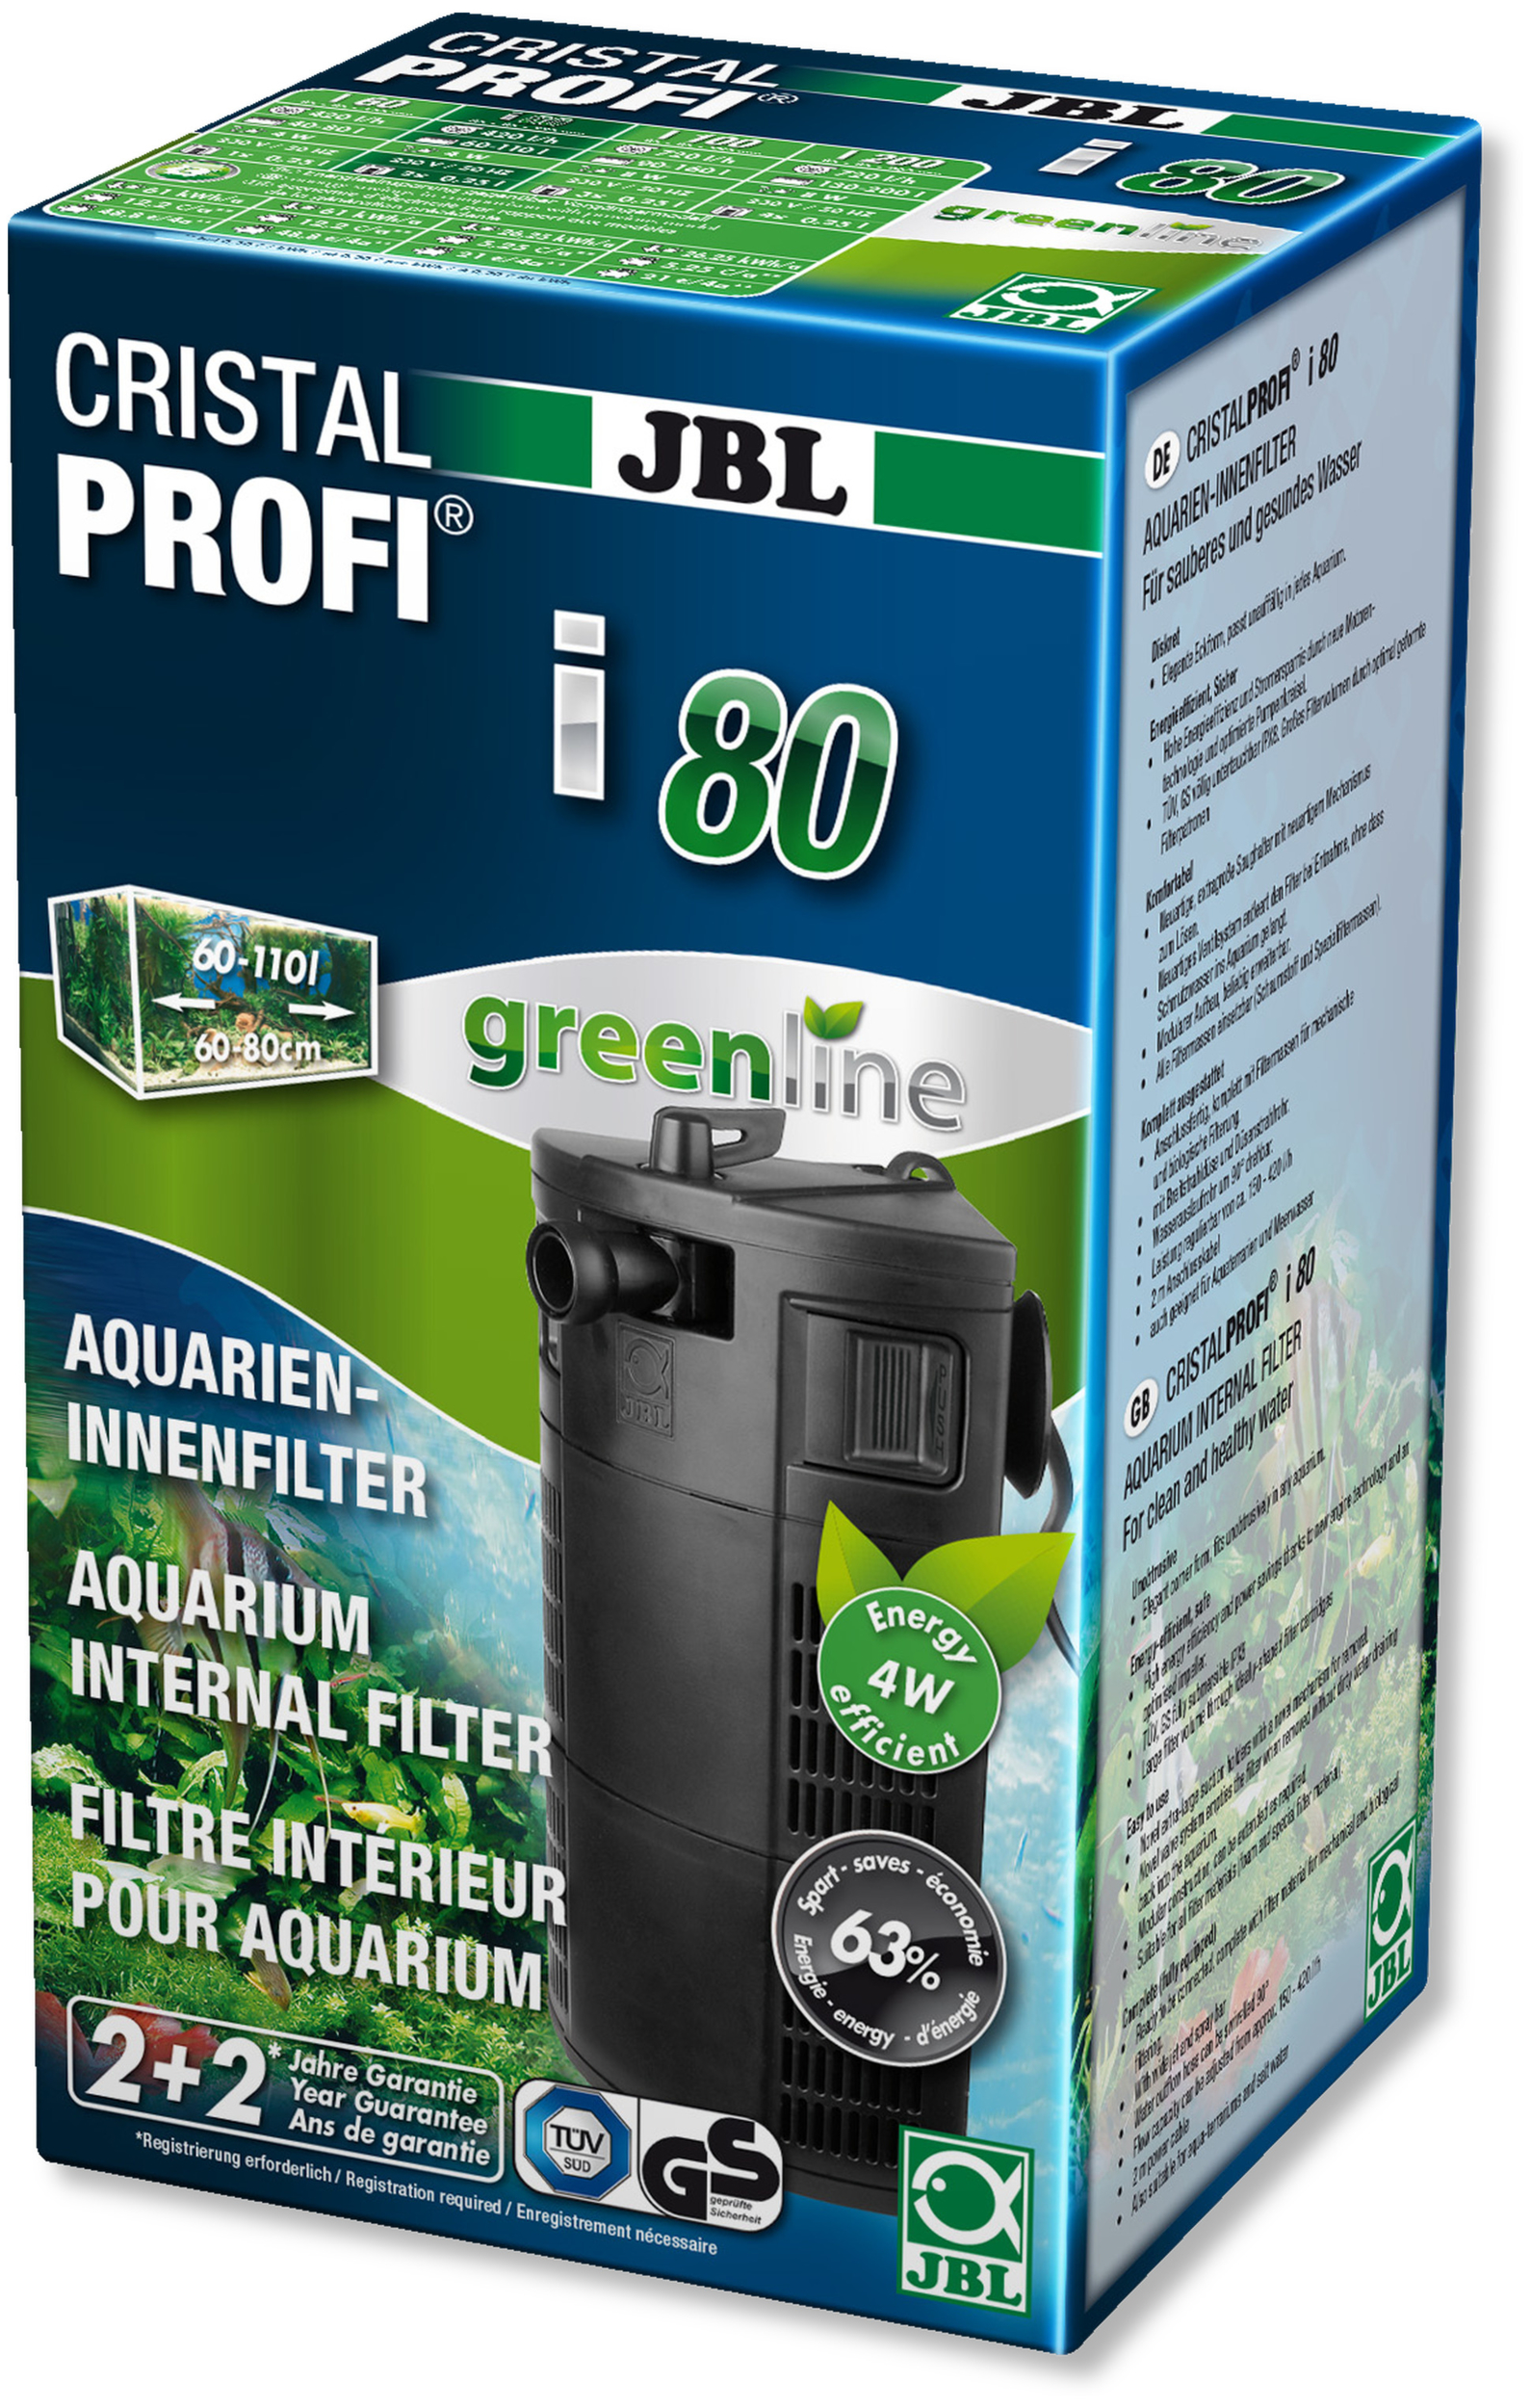 Filtre interne JBL CristalProfi i80 Greenline pour aquarium de 60 à 110L